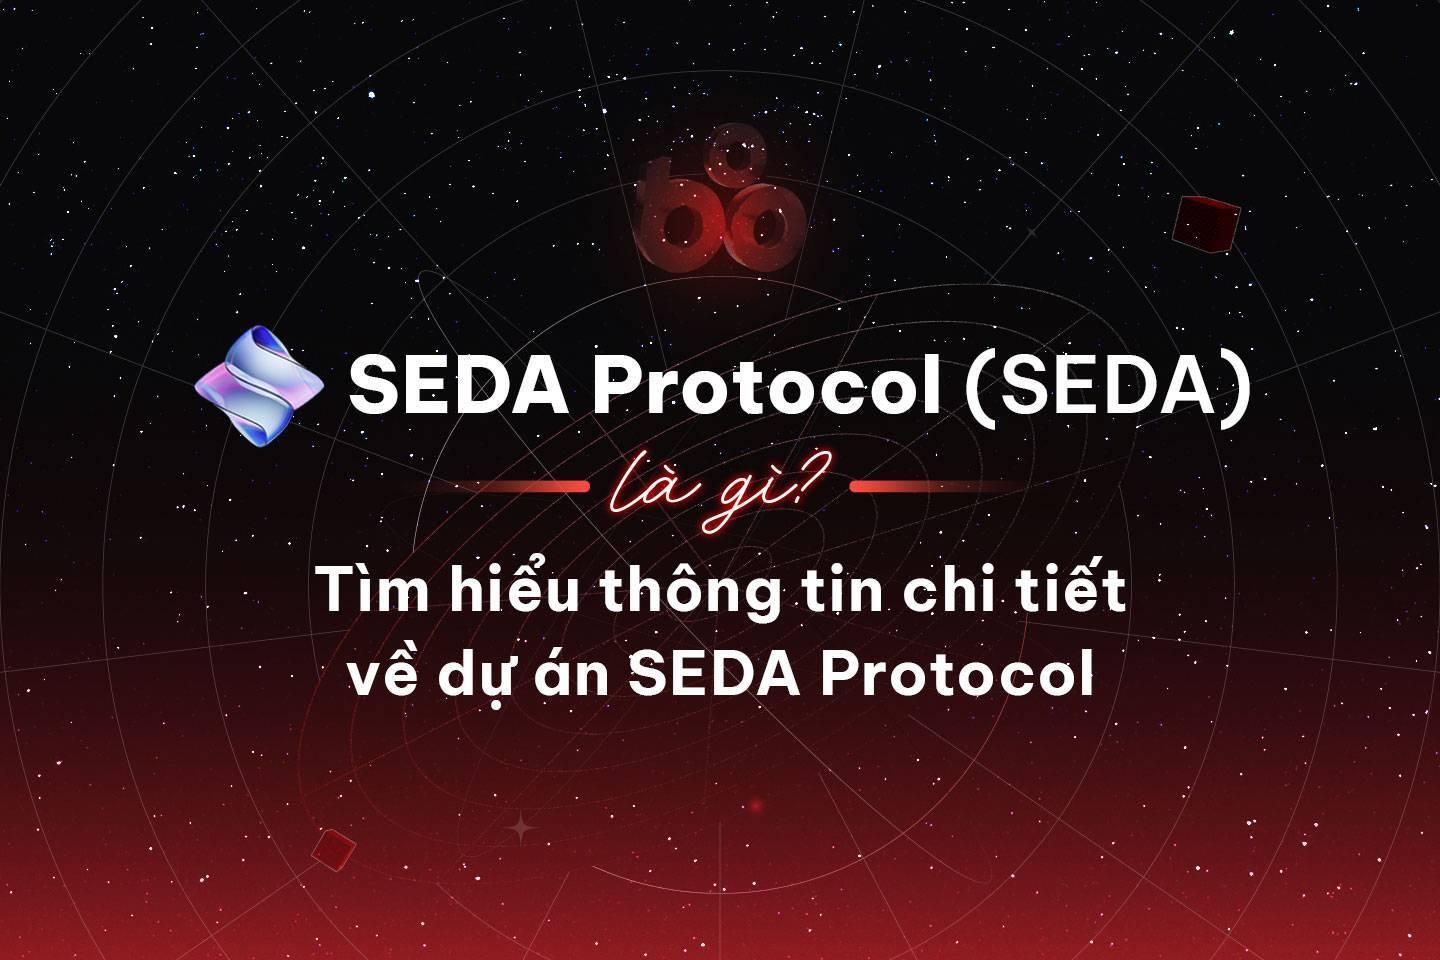 seda-protocol-seda-la-gi-tim-hieu-thong-tin-chi-tiet-ve-du-an-seda-protocol